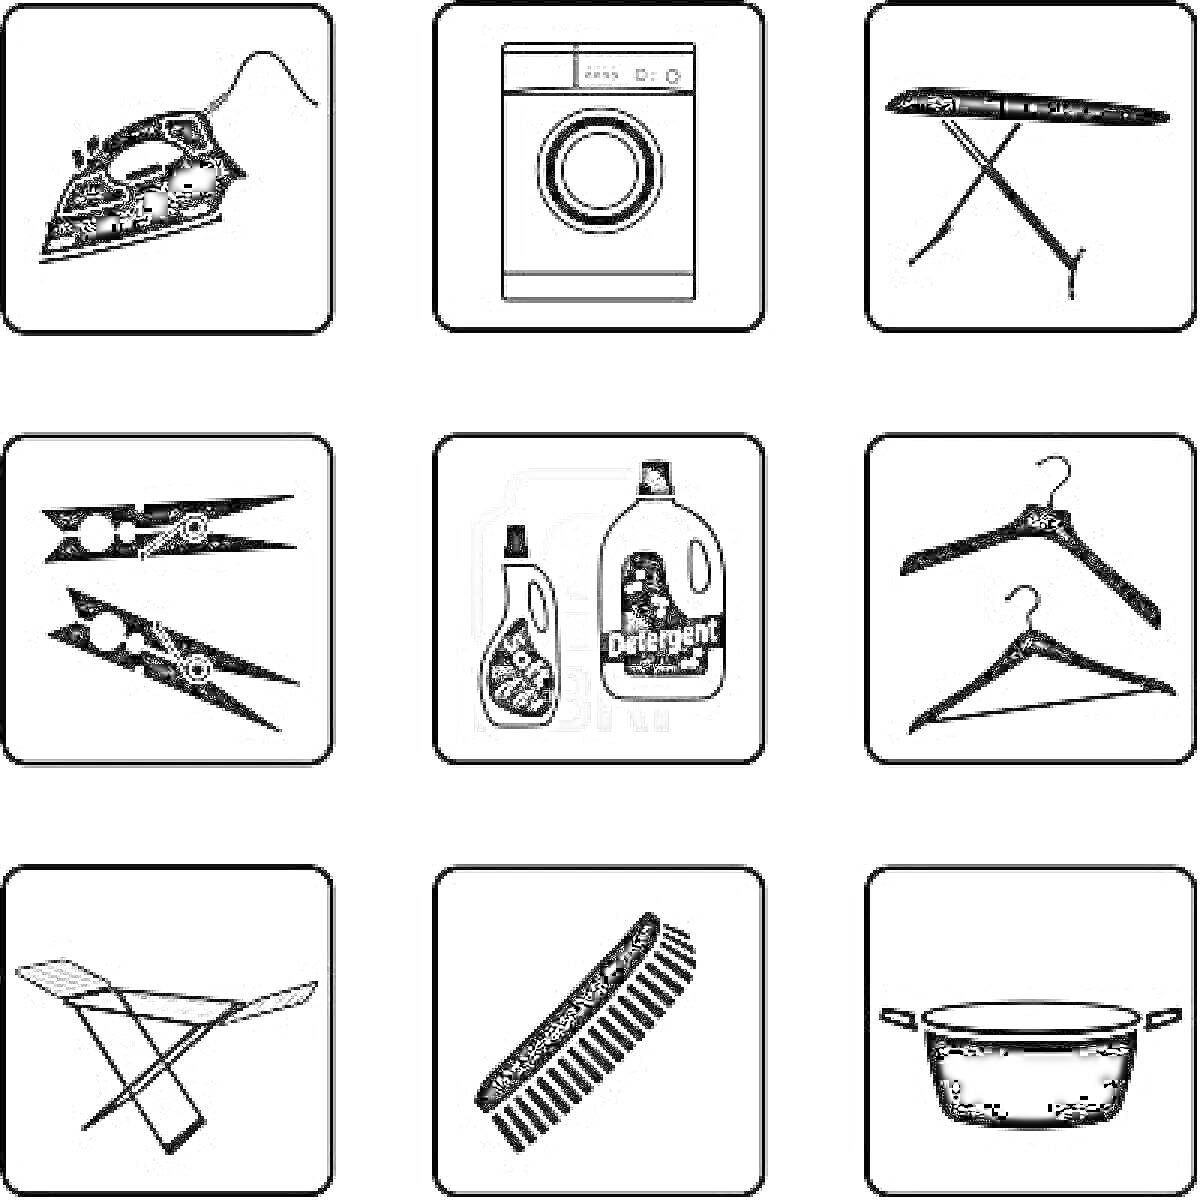 Уход за одеждой: утюг, стиральная машина, гладильная доска, прищепки, кондиционер и стиральный порошок, вешалки, сушилка, щетка, кастрюля